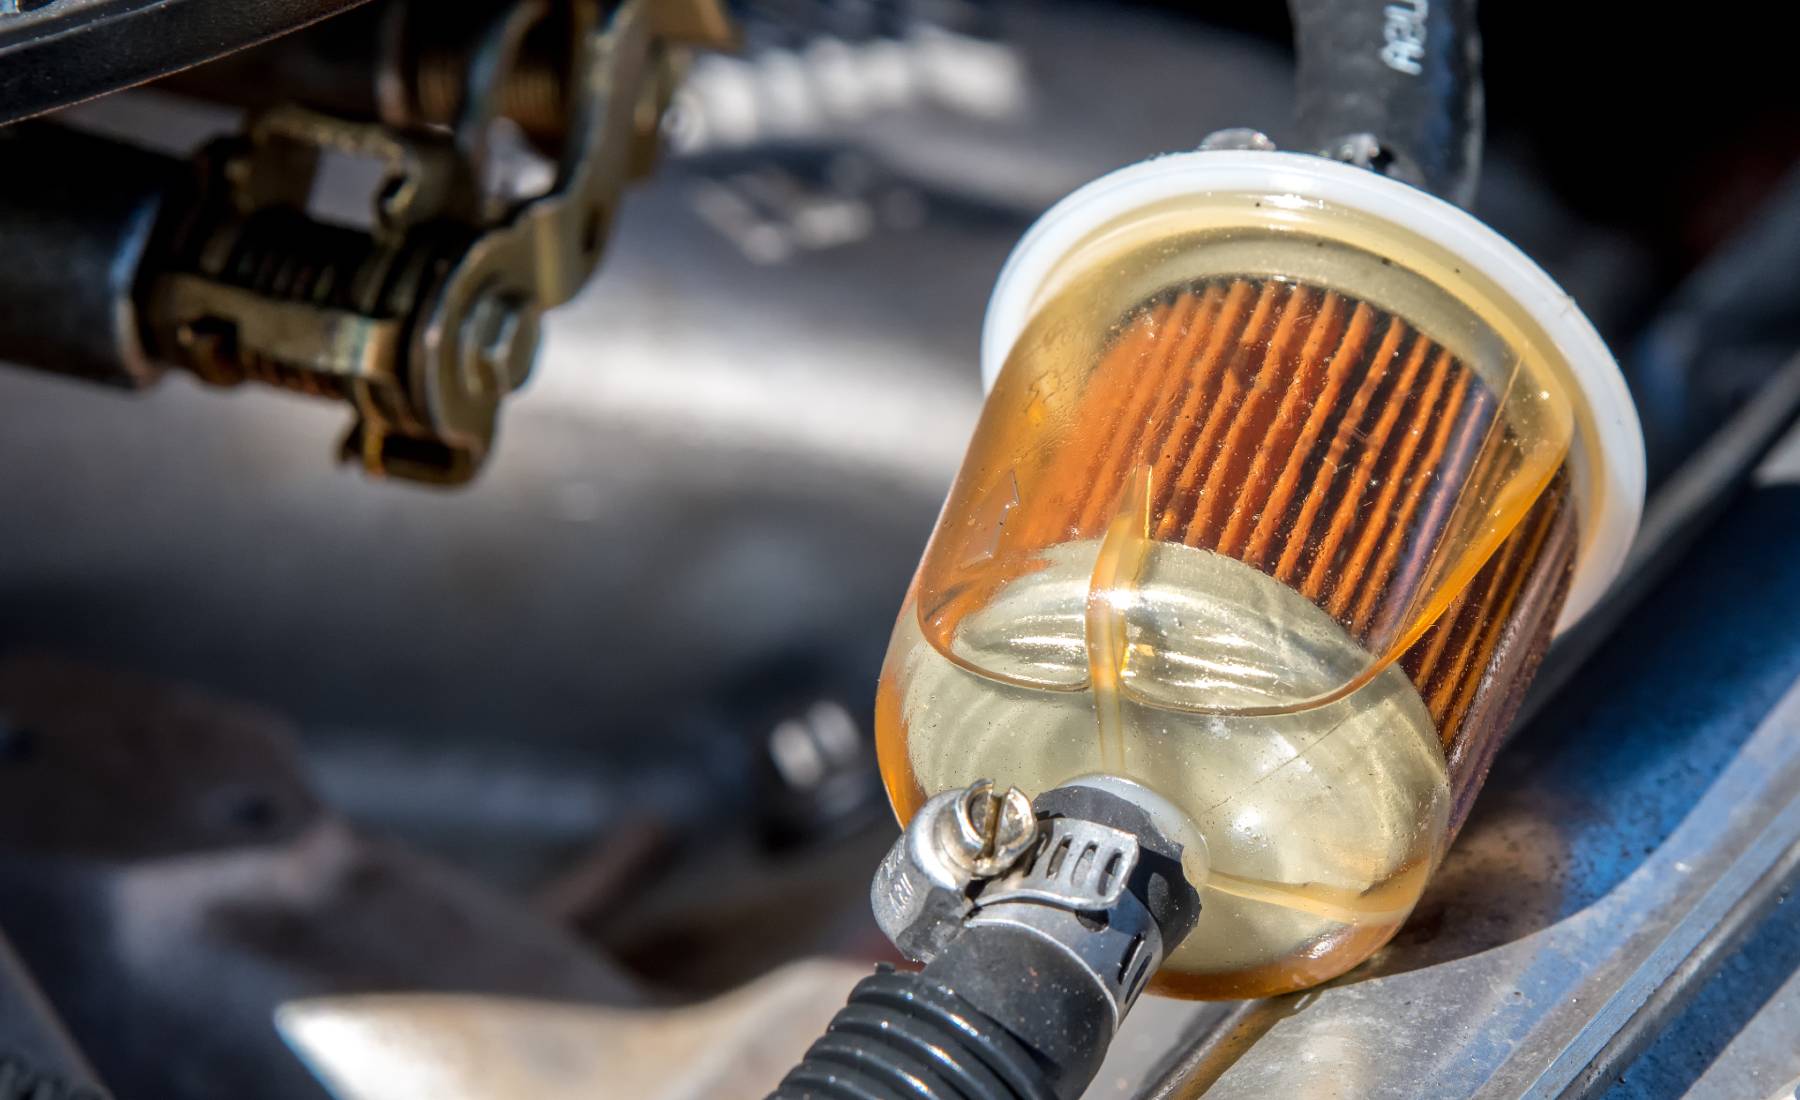 soluciones rápidas y seguras: cómo actuar si dentro del coche huele a gasolina